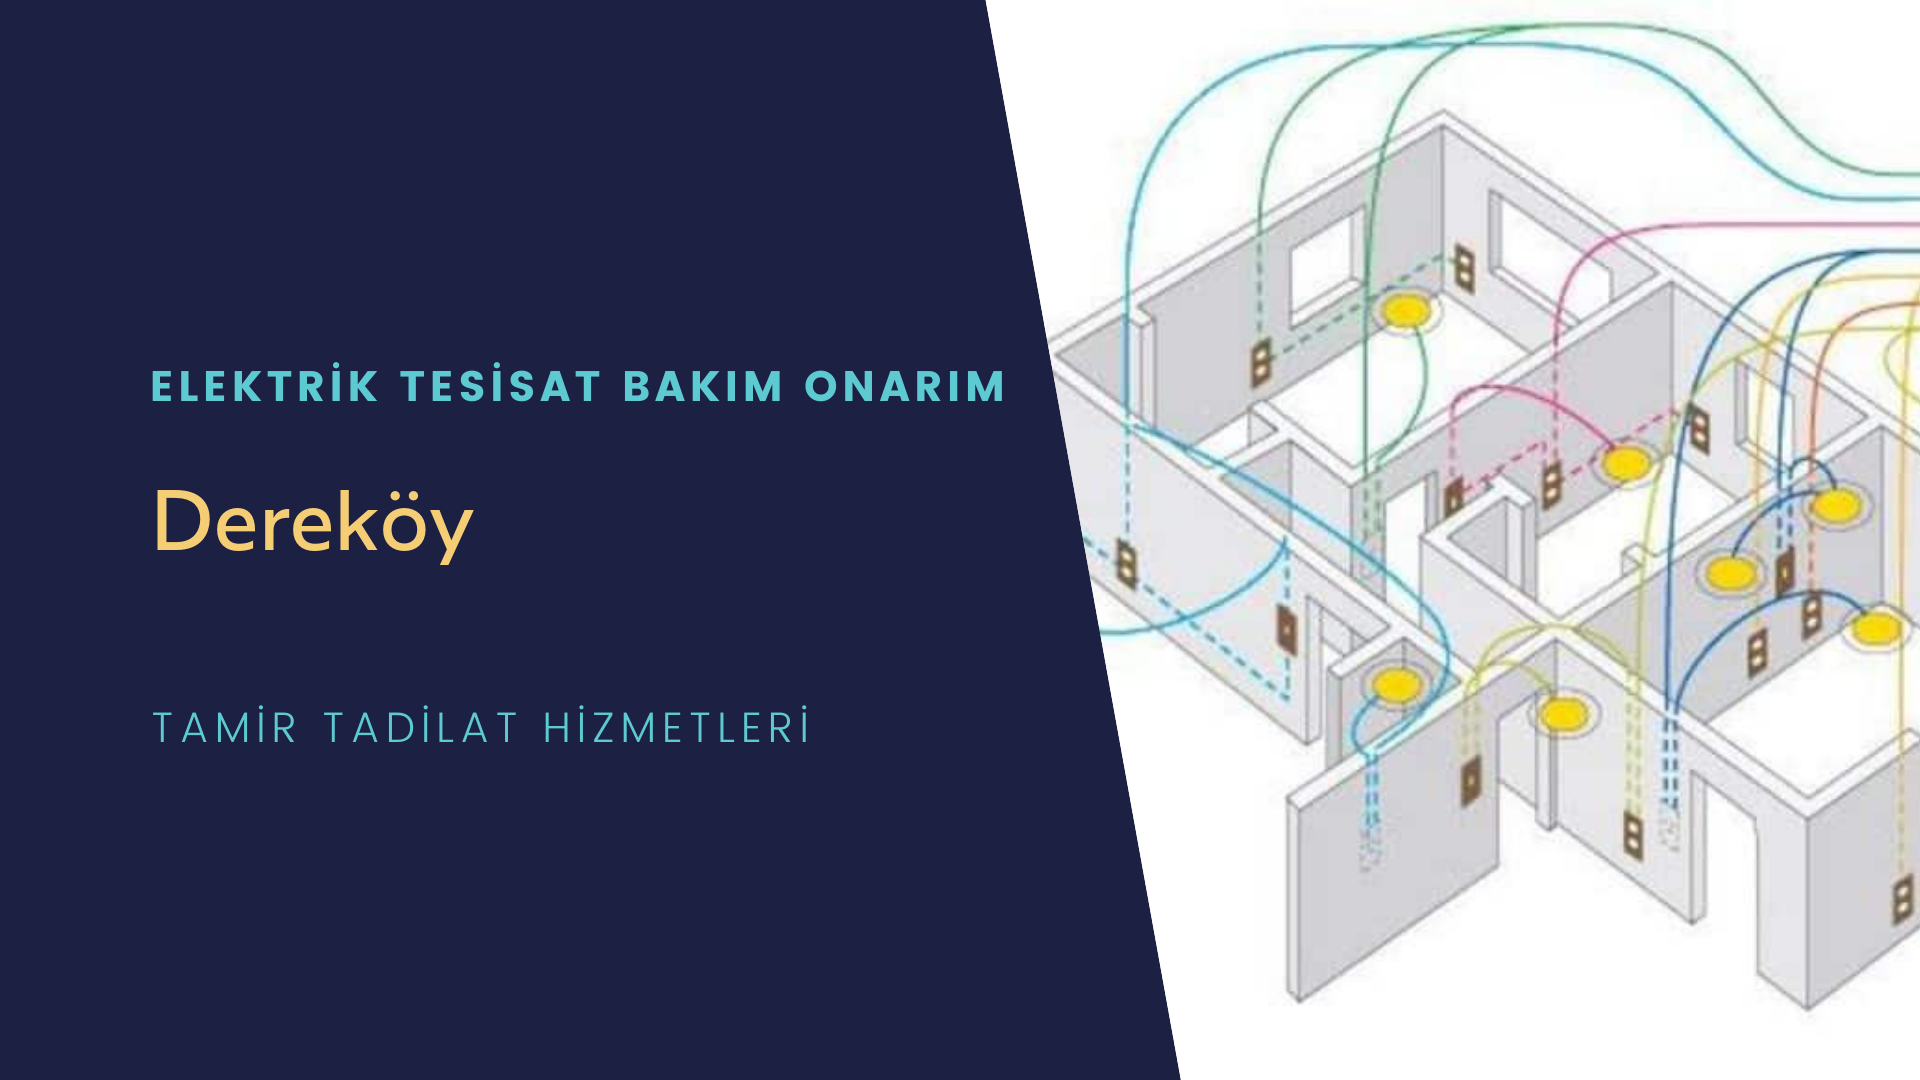 Dereköy'de elektrik tesisatı ustalarımı arıyorsunuz doğru adrestenizi Dereköy elektrik tesisatı ustalarımız 7/24 sizlere hizmet vermekten mutluluk duyar.